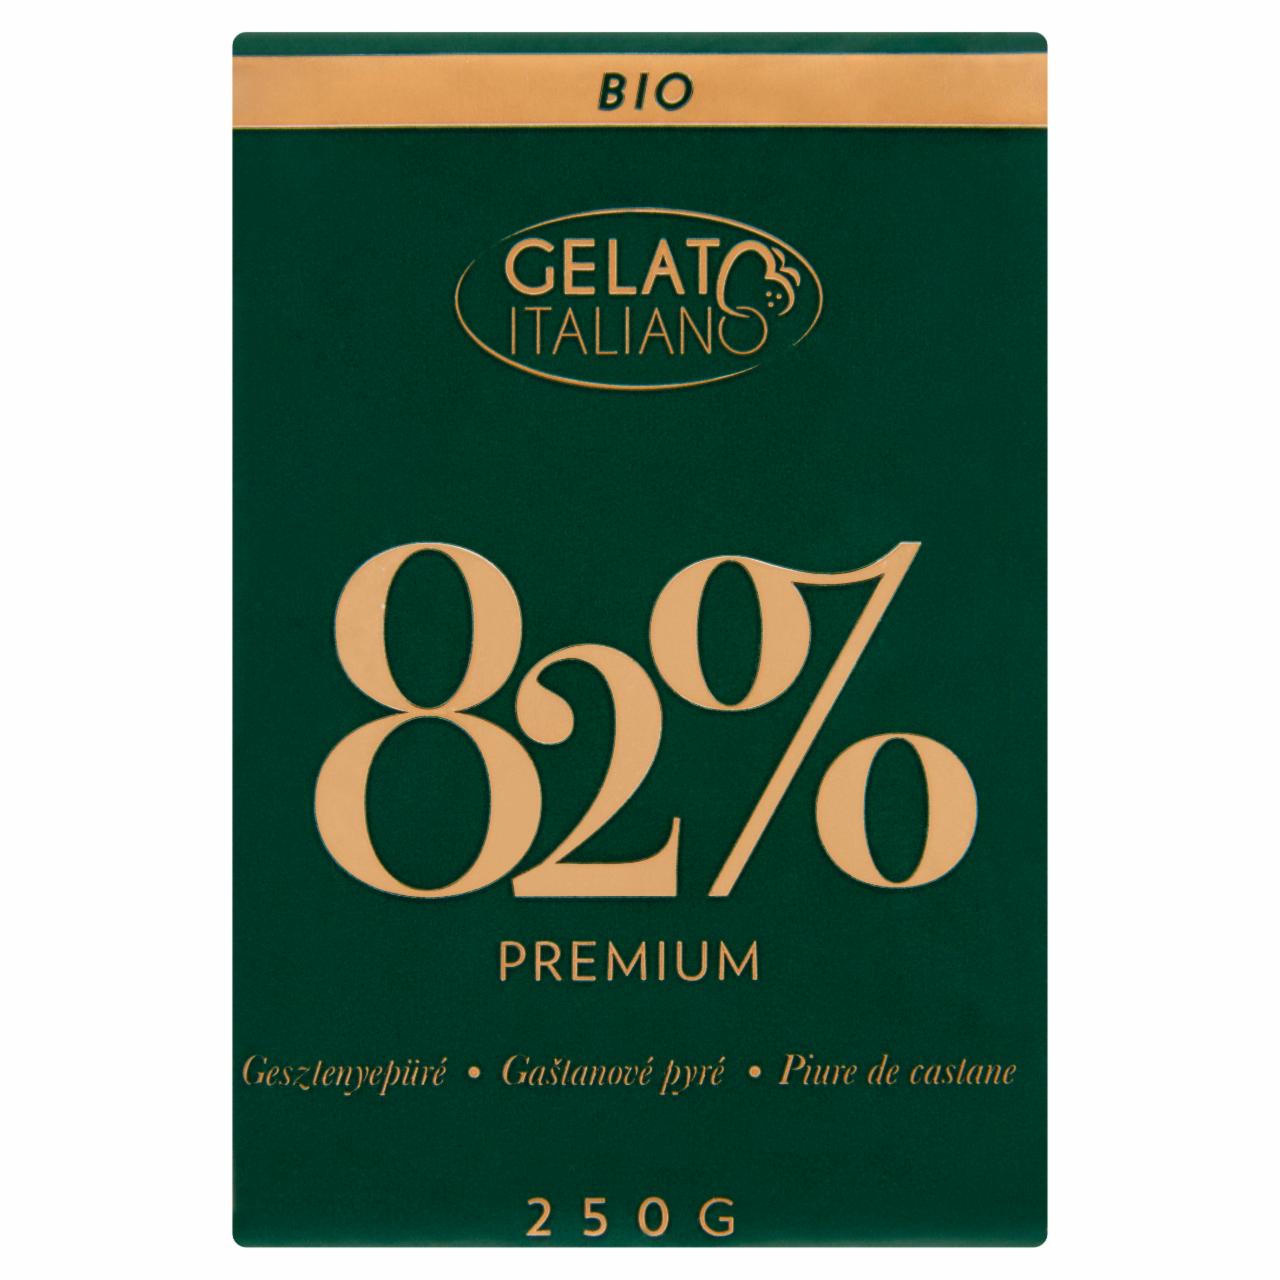 Képek - Gelato Italiano Premium BIO gesztenyepüré 250 g